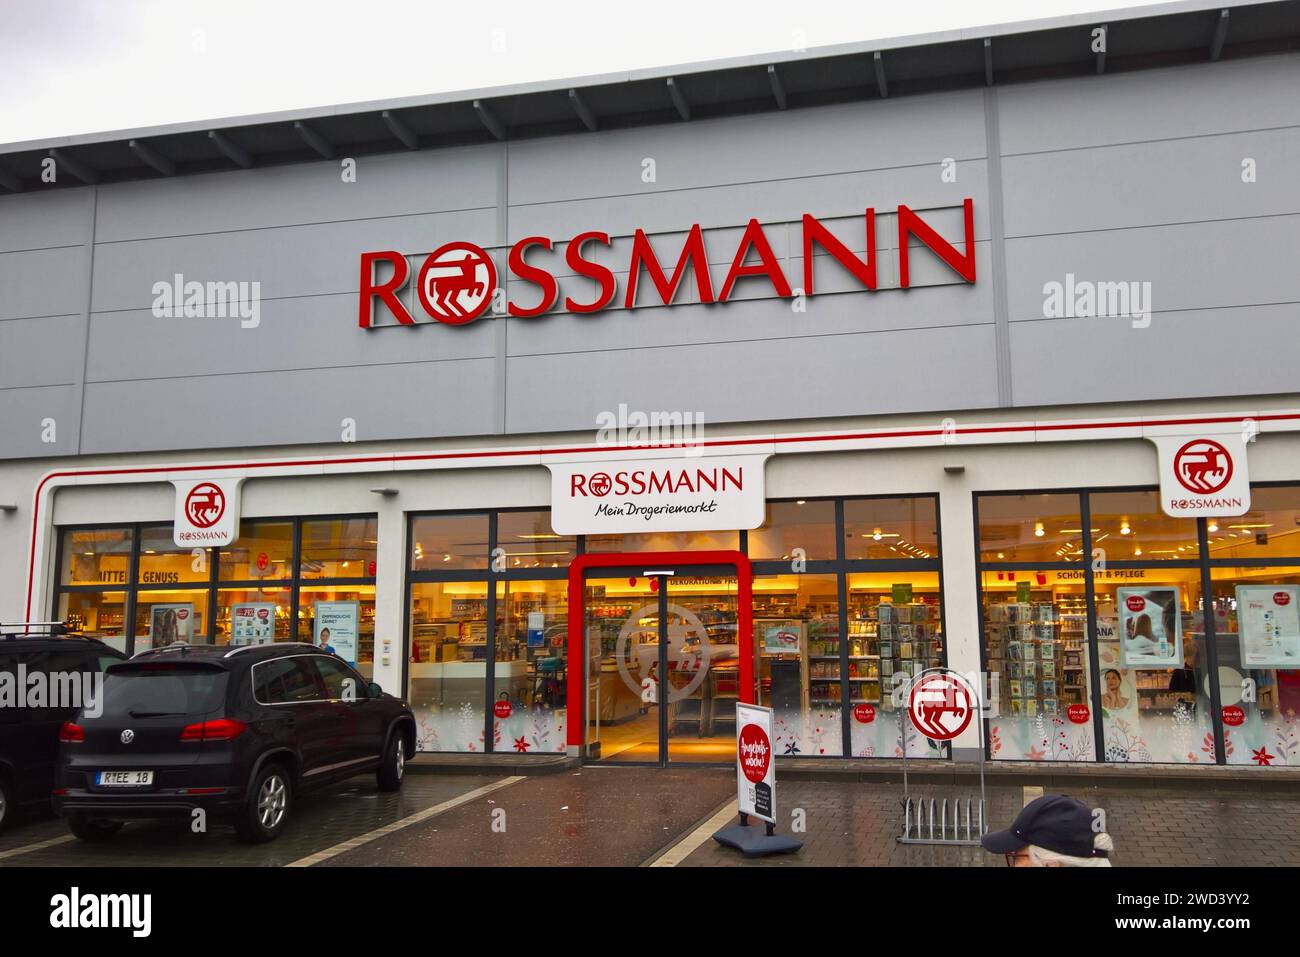 Unser Blog von der Roßmann Electronic GmbH - Aktuelle News